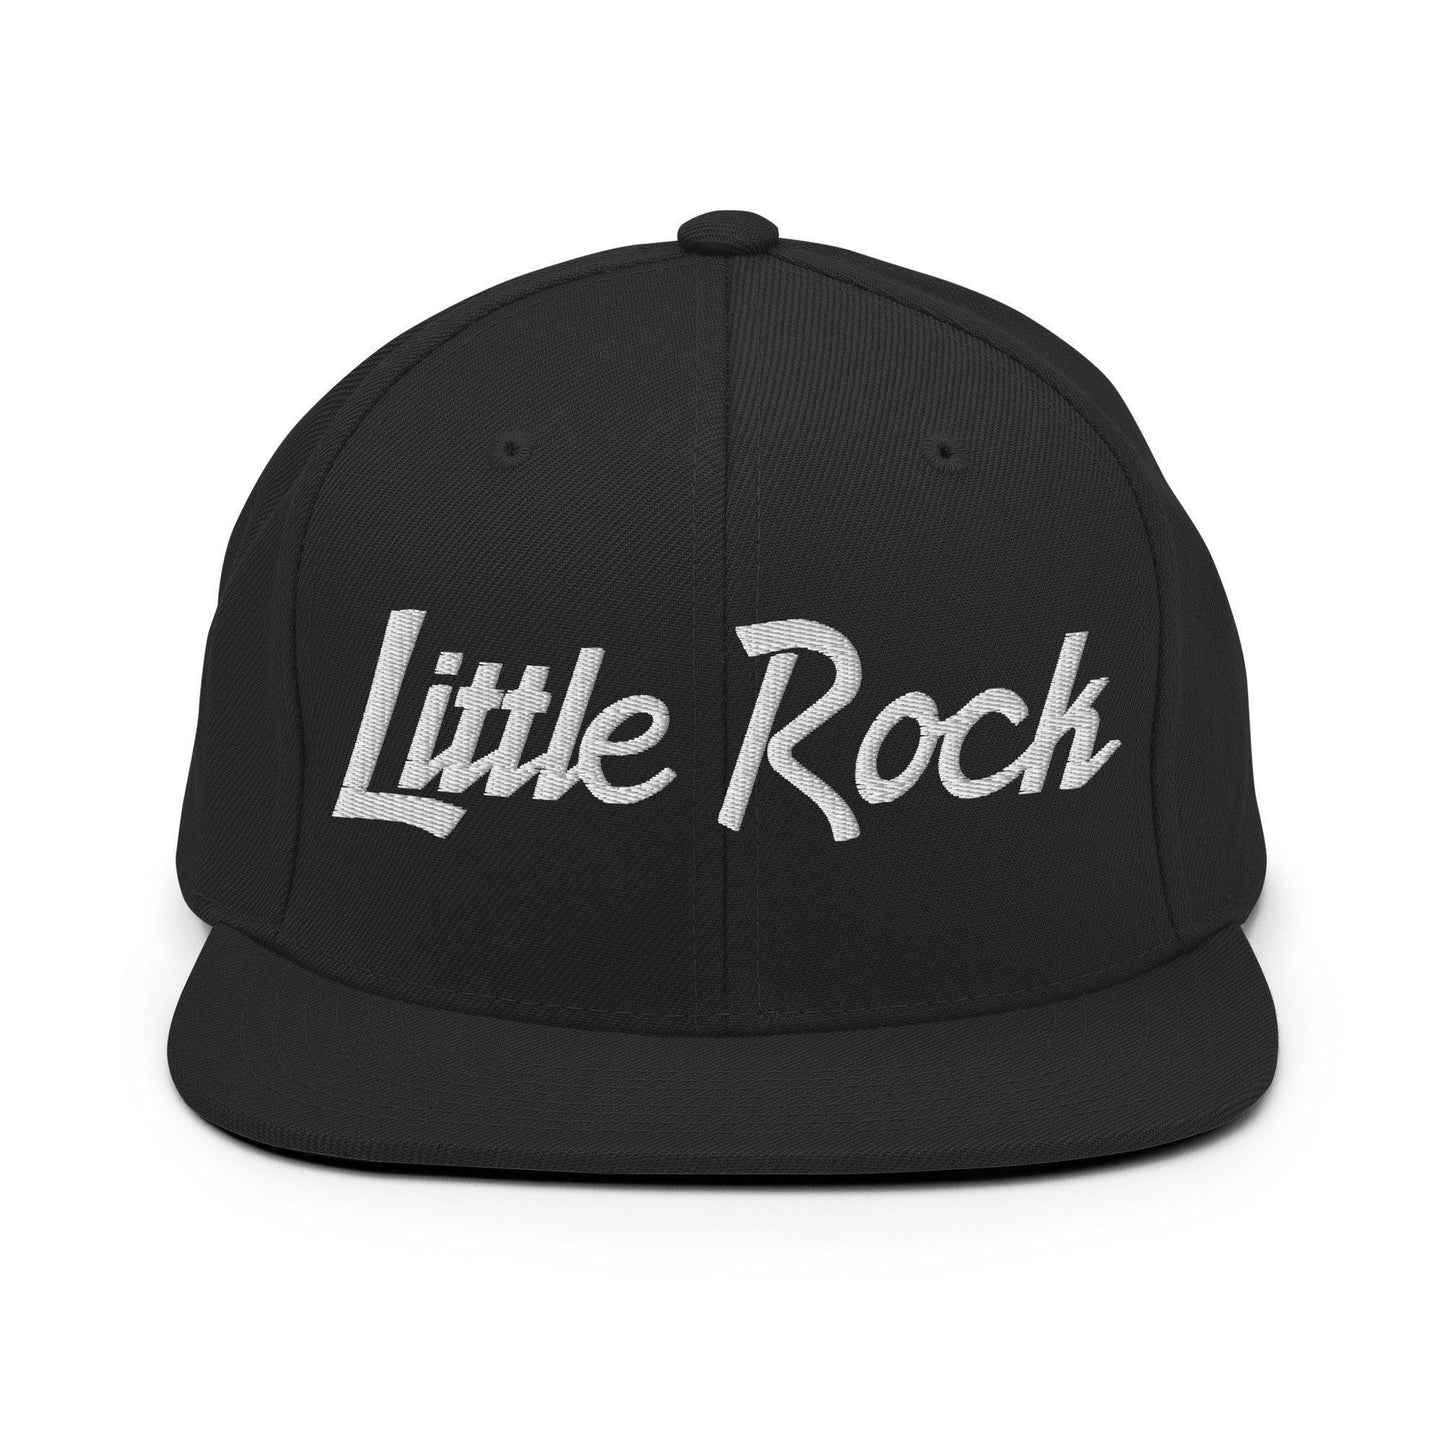 Little Rock Script Snapback Hat Black